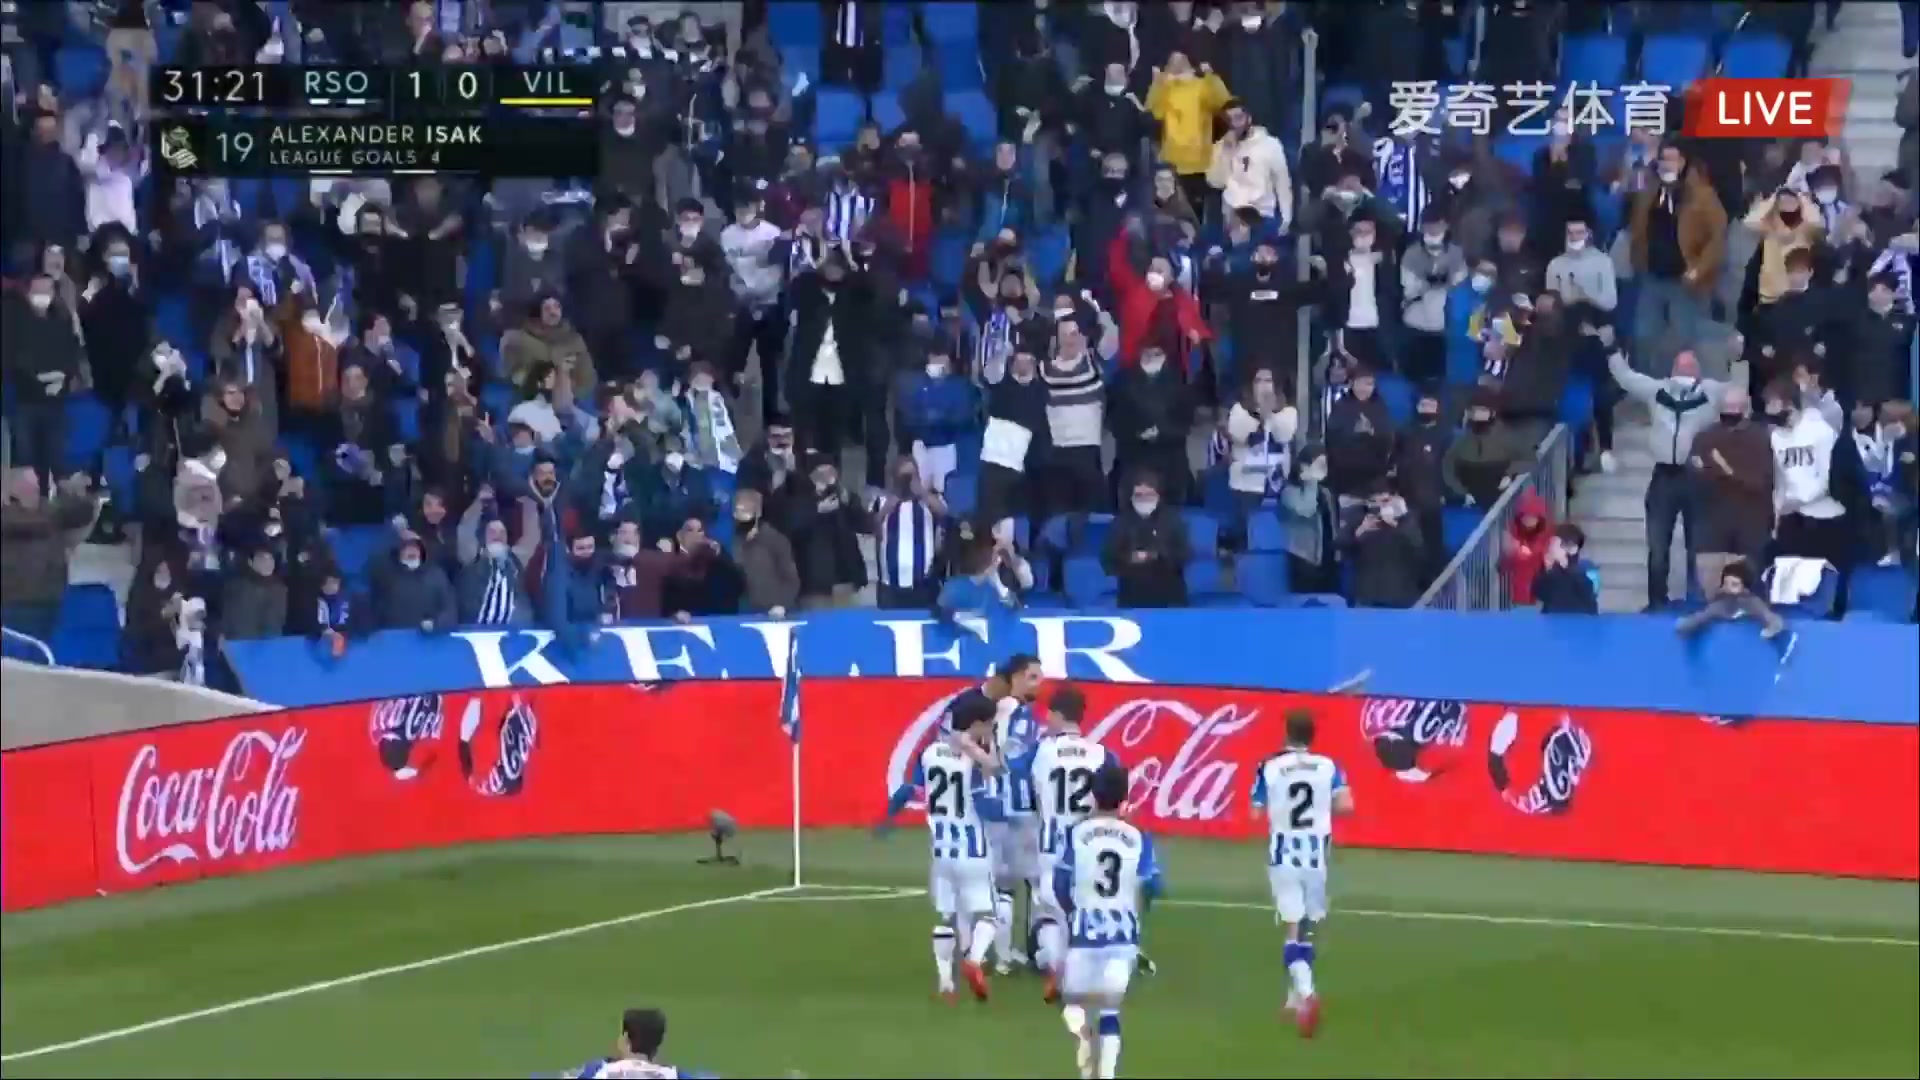 Laliga1 Real Sociedad Vs Villarreal Alexander Isak Goal in 31 min, Score 1:0